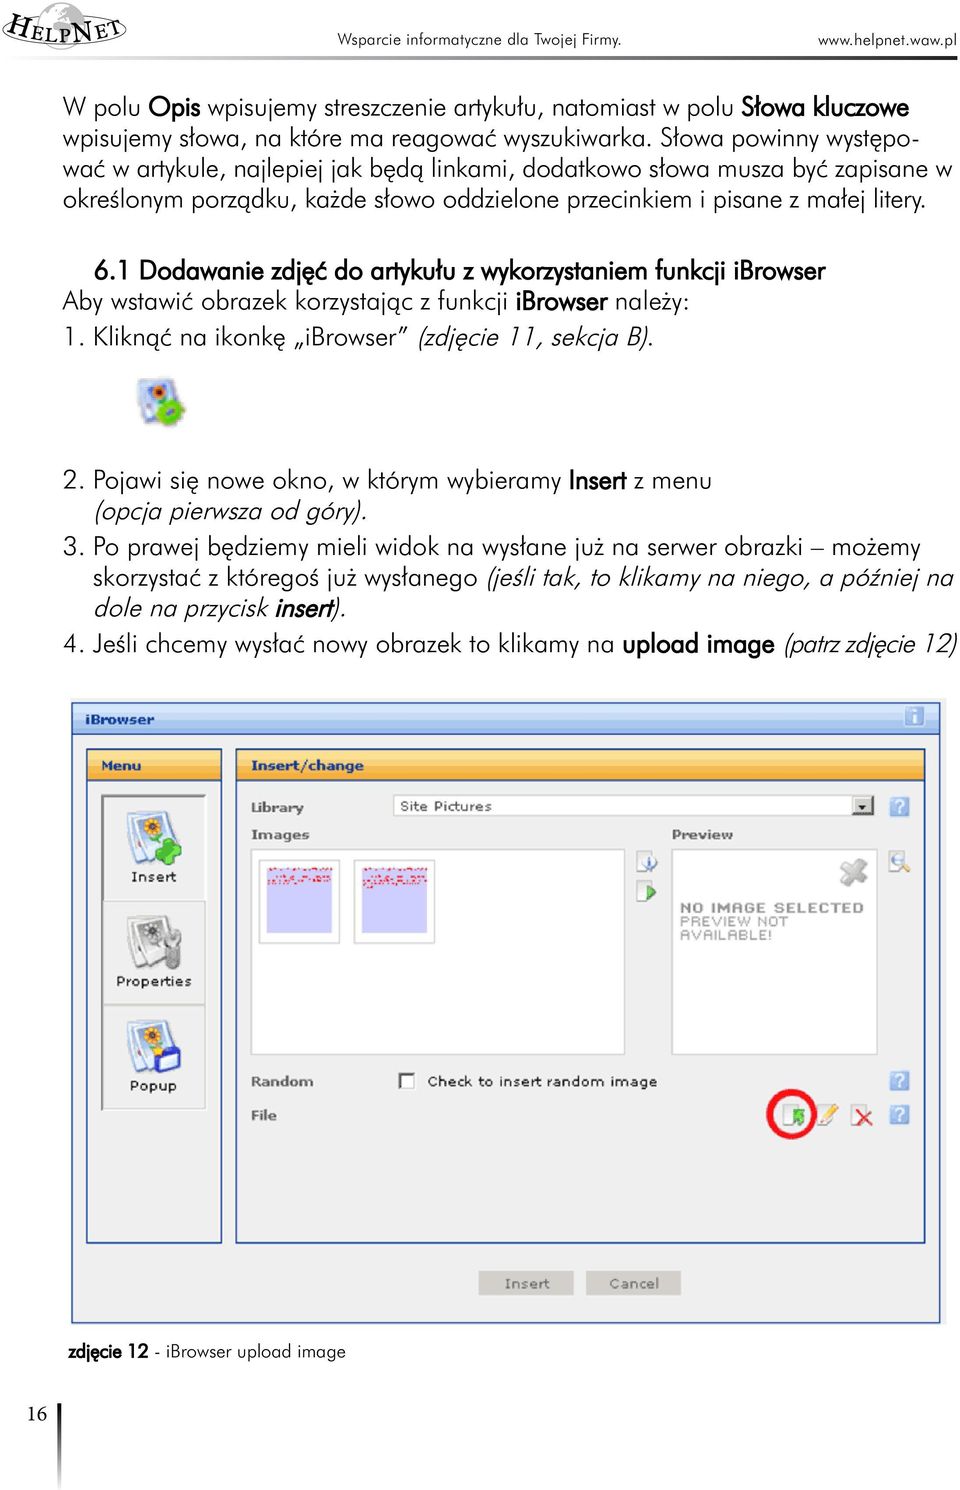 1 Dodawanie zdjęć do artykułu z wykorzystaniem funkcji ibrowser Aby wstawić obrazek korzystając z funkcji ibrowser należy: 1. Kliknąć na ikonkę ibrowser (zdjęcie 11, sekcja B). 2.